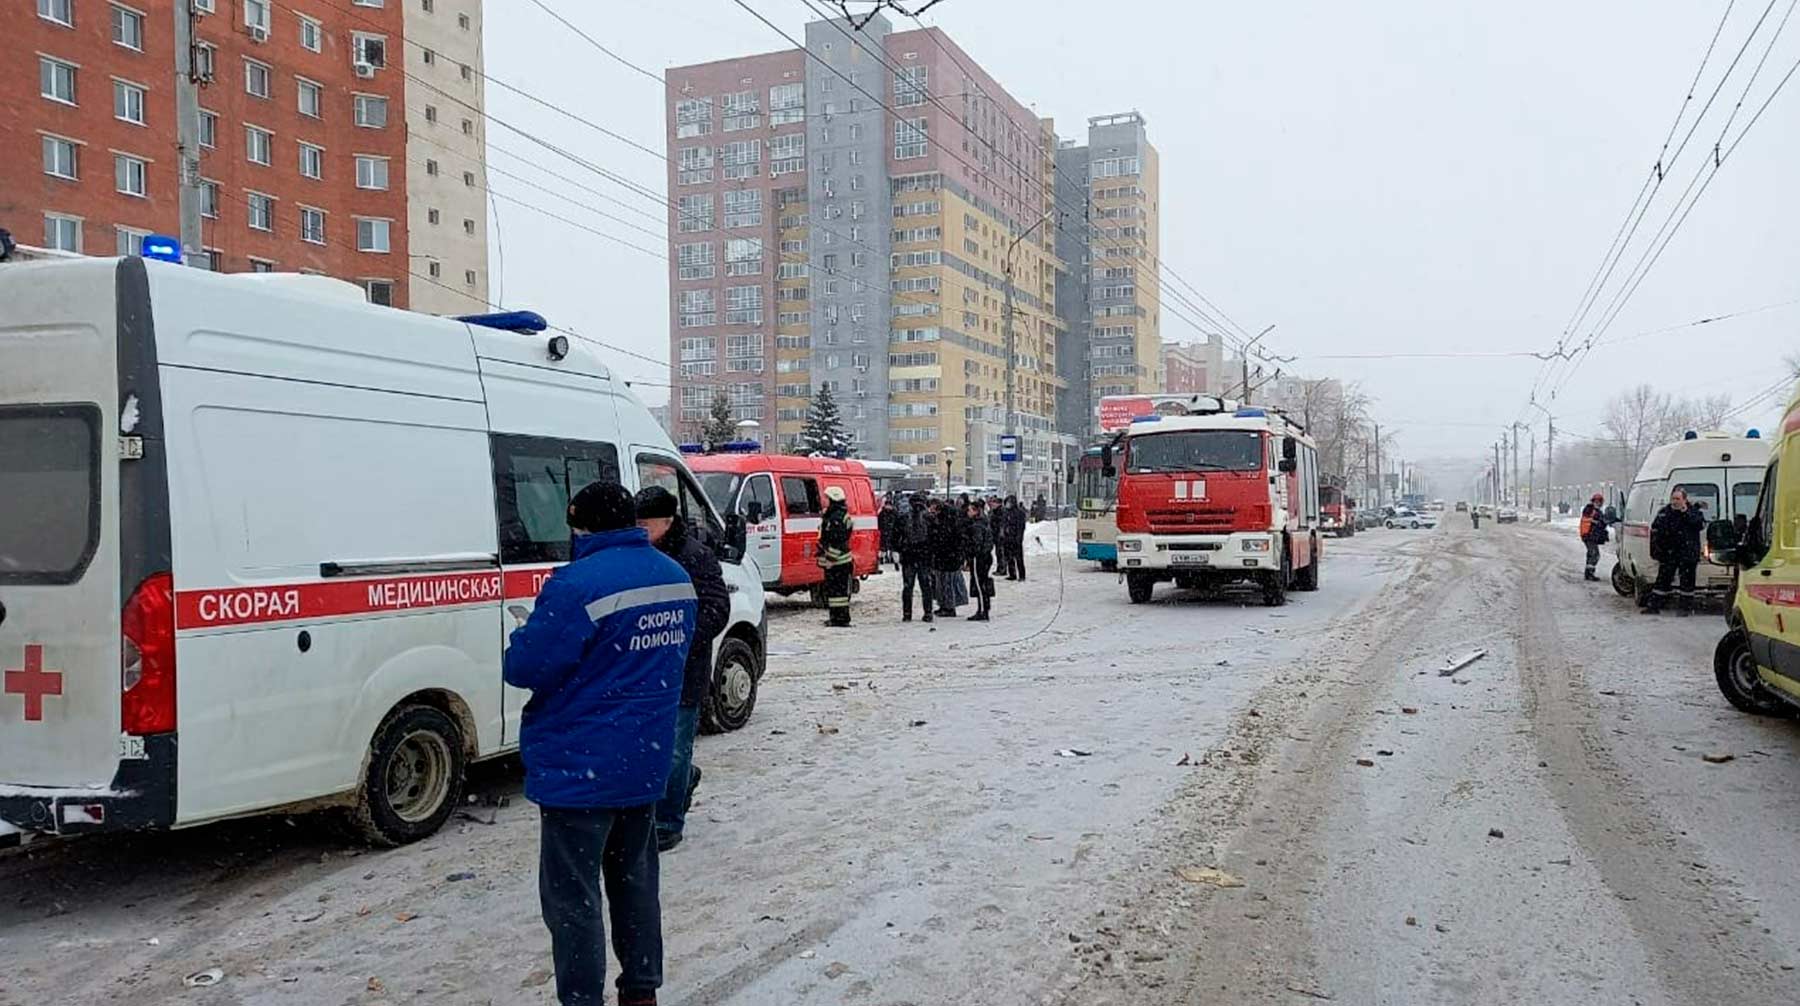 Поиски еще одного человека на месте взрыва в многоэтажном доме продолжаются Фото: © Global Look Press / МЧС РФ